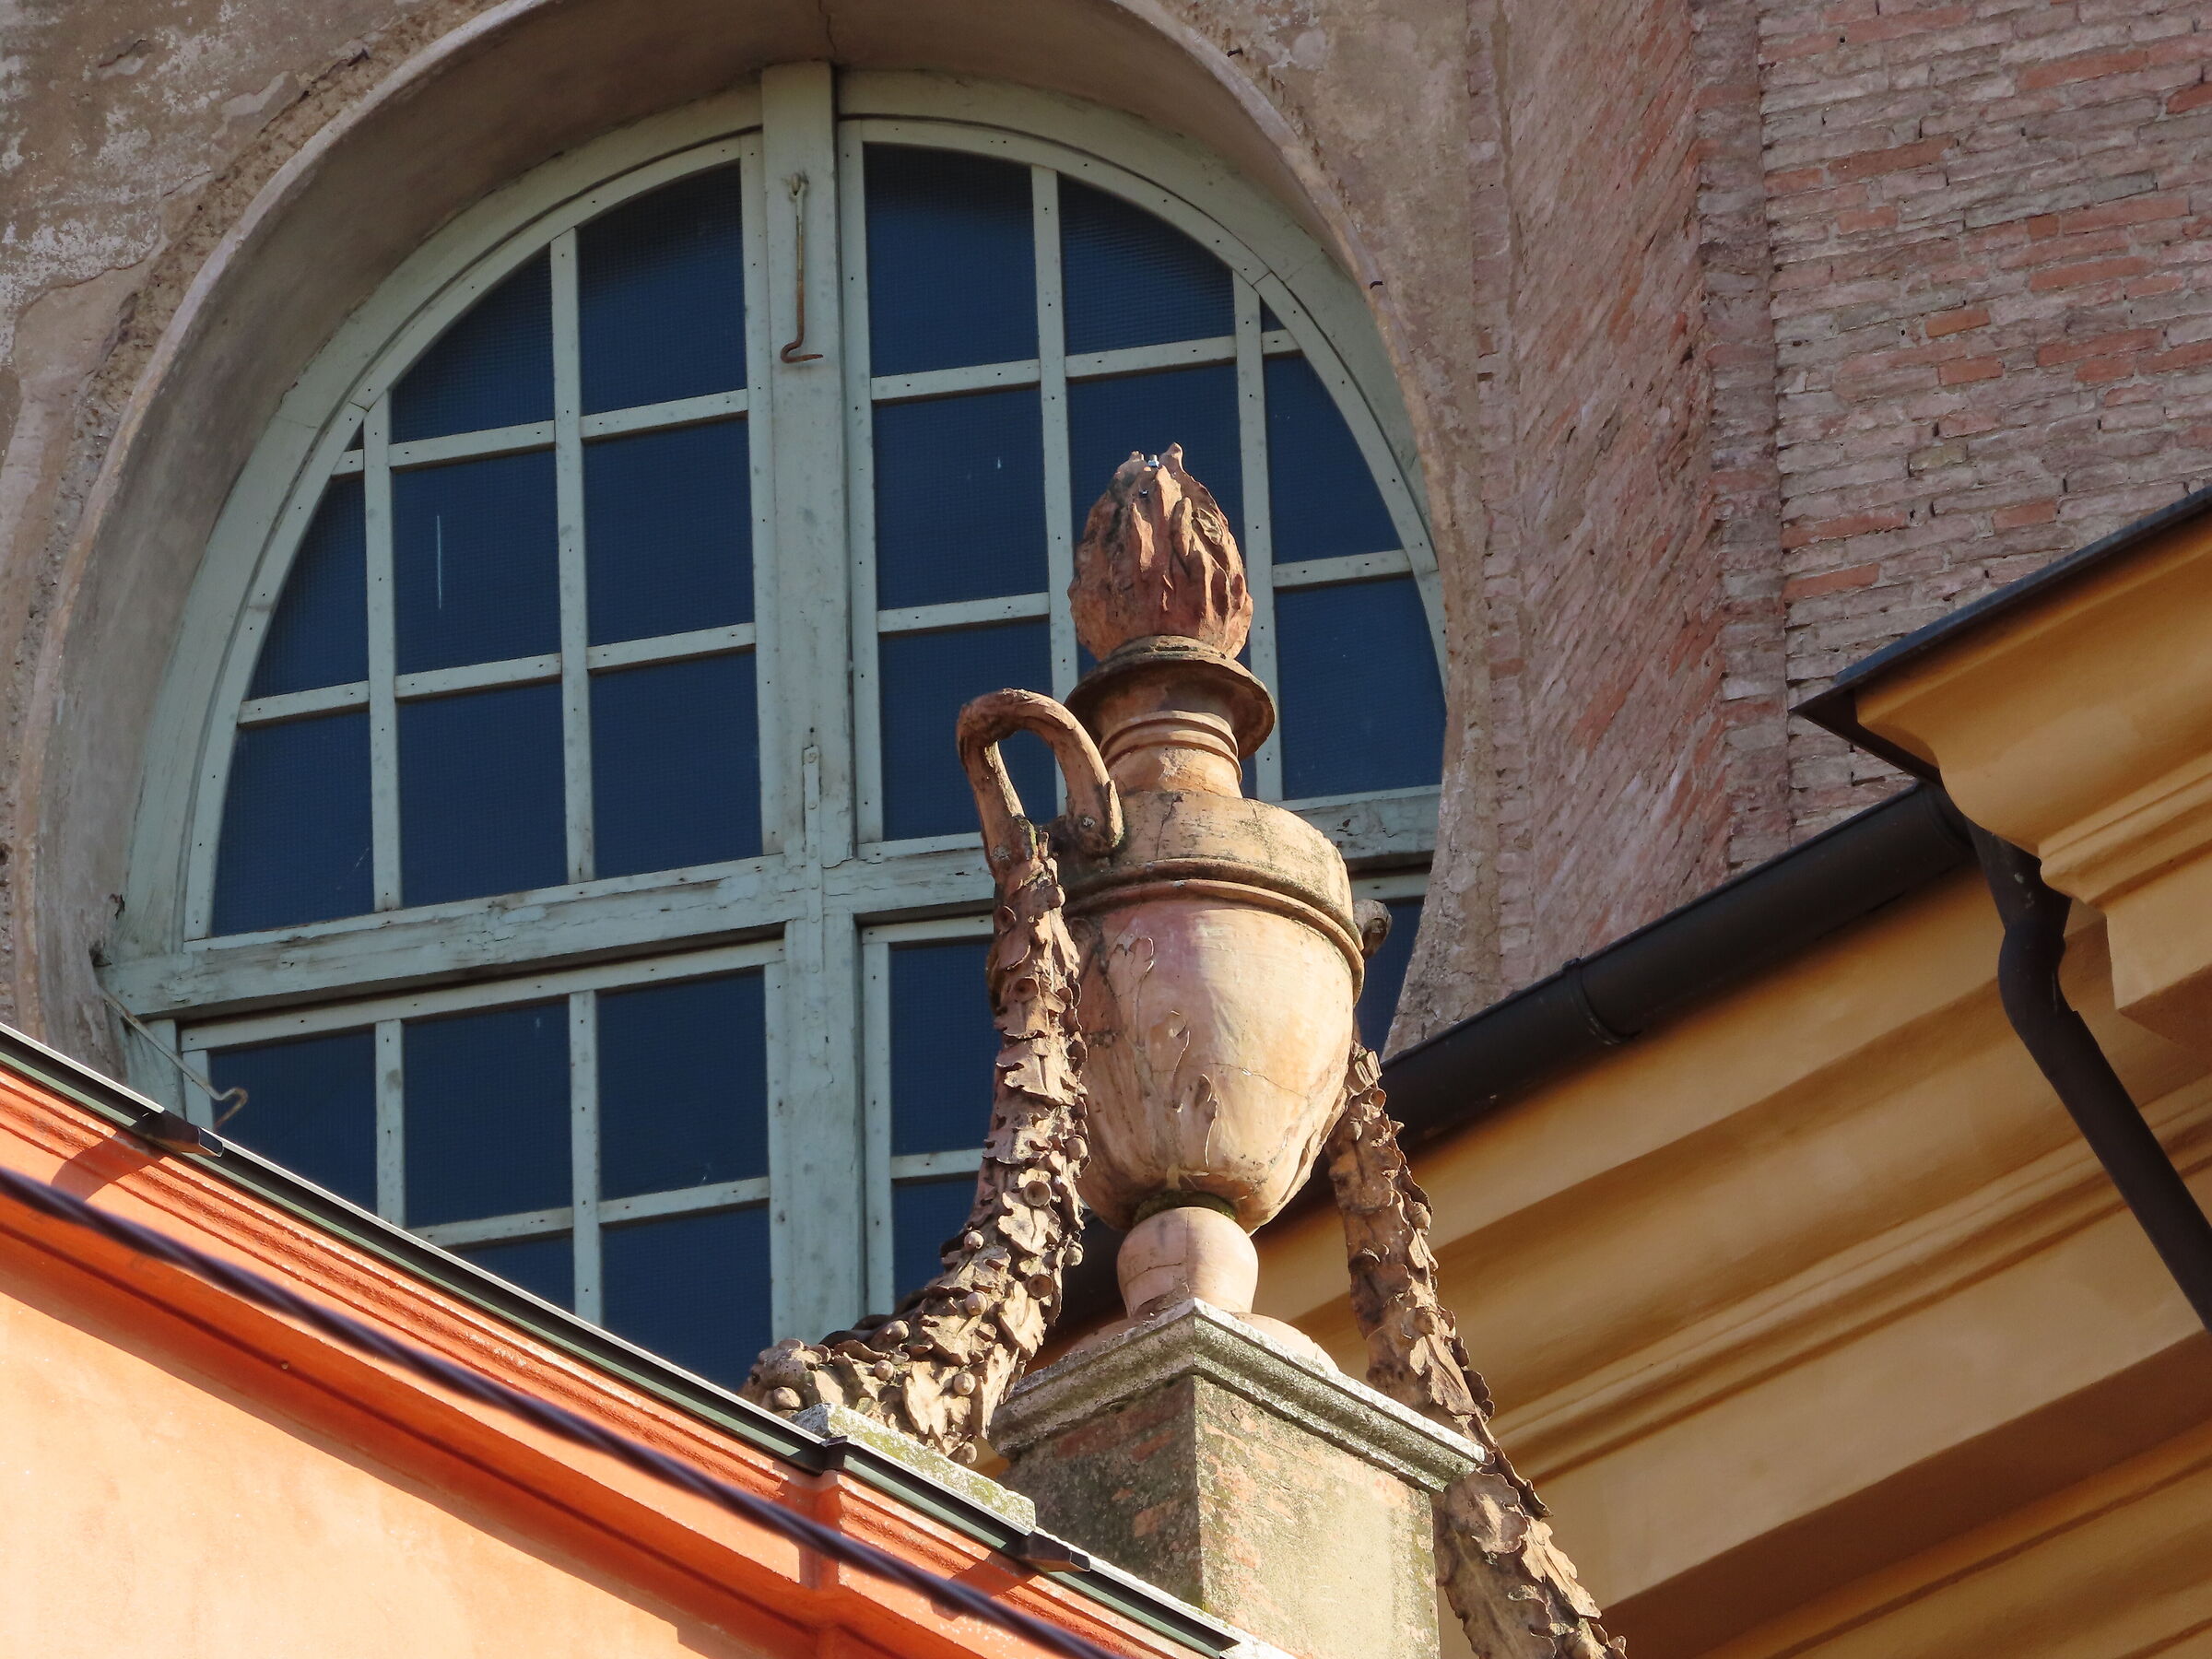 Details of San Domenico in Modena...